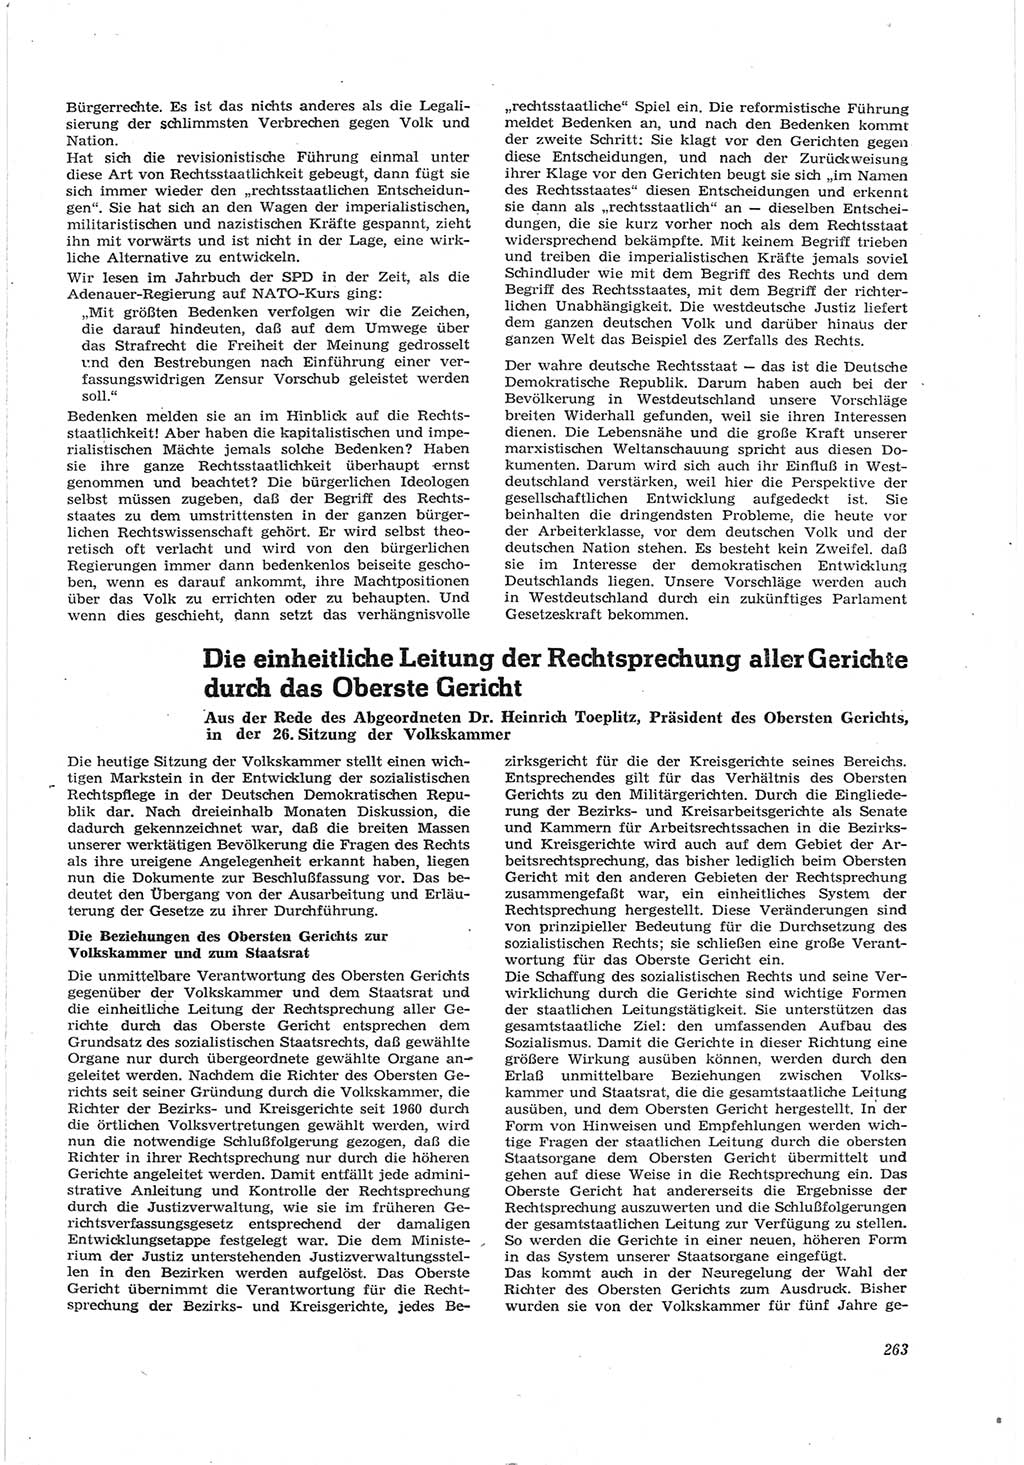 Neue Justiz (NJ), Zeitschrift für Recht und Rechtswissenschaft [Deutsche Demokratische Republik (DDR)], 17. Jahrgang 1963, Seite 263 (NJ DDR 1963, S. 263)